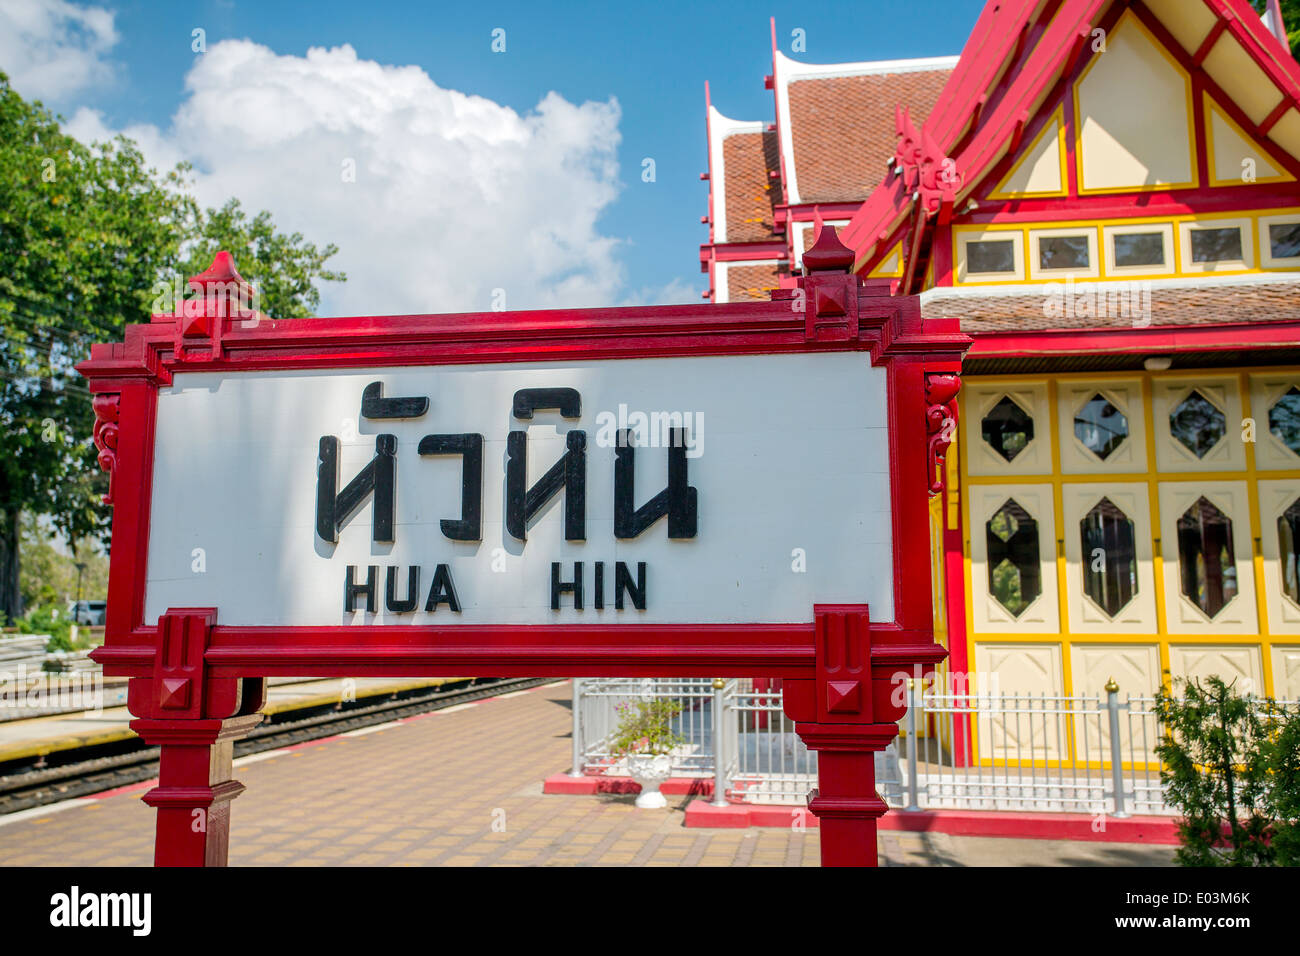 Hua Hin train station signboard Stock Photo